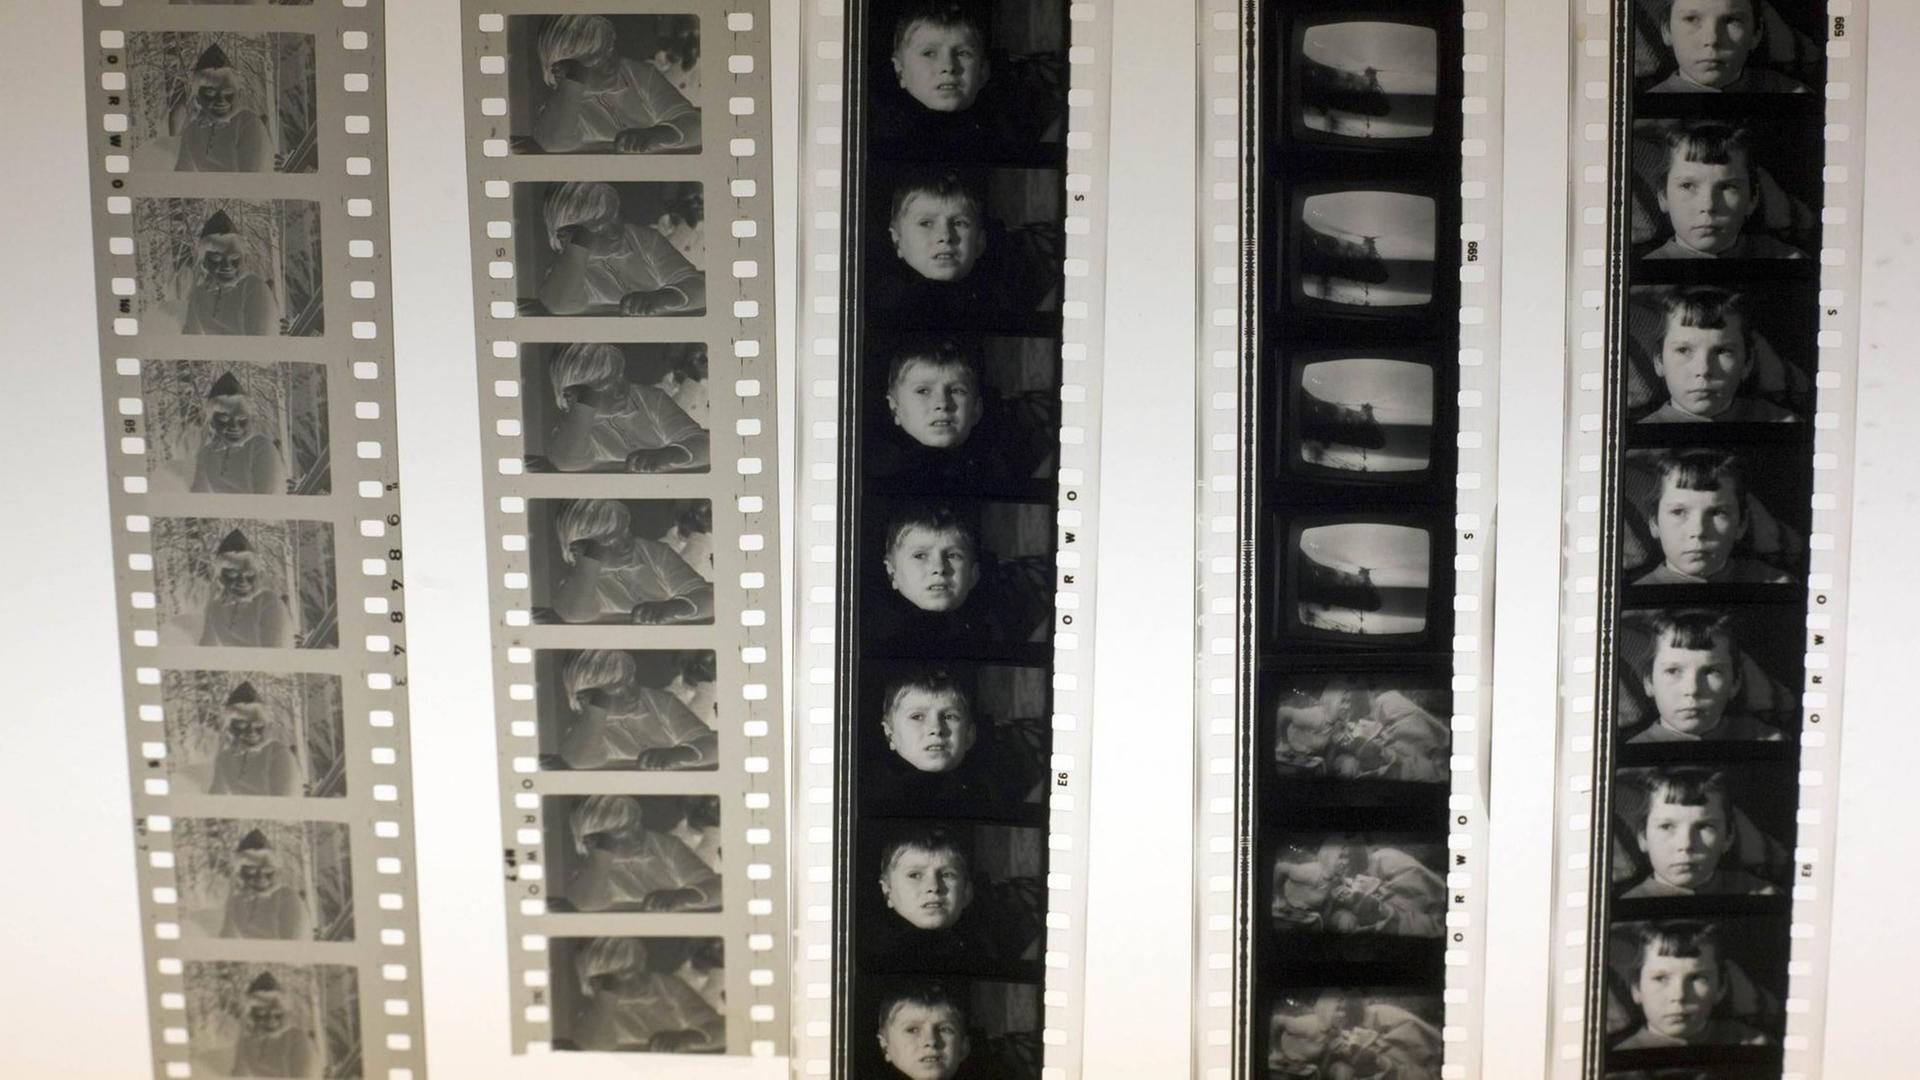 Fünf Filmrollen mit Sequenzen aus "Die Kinder von Golzow". Das Material war 2008 in einer Ausstellung in Golzow zu sehen